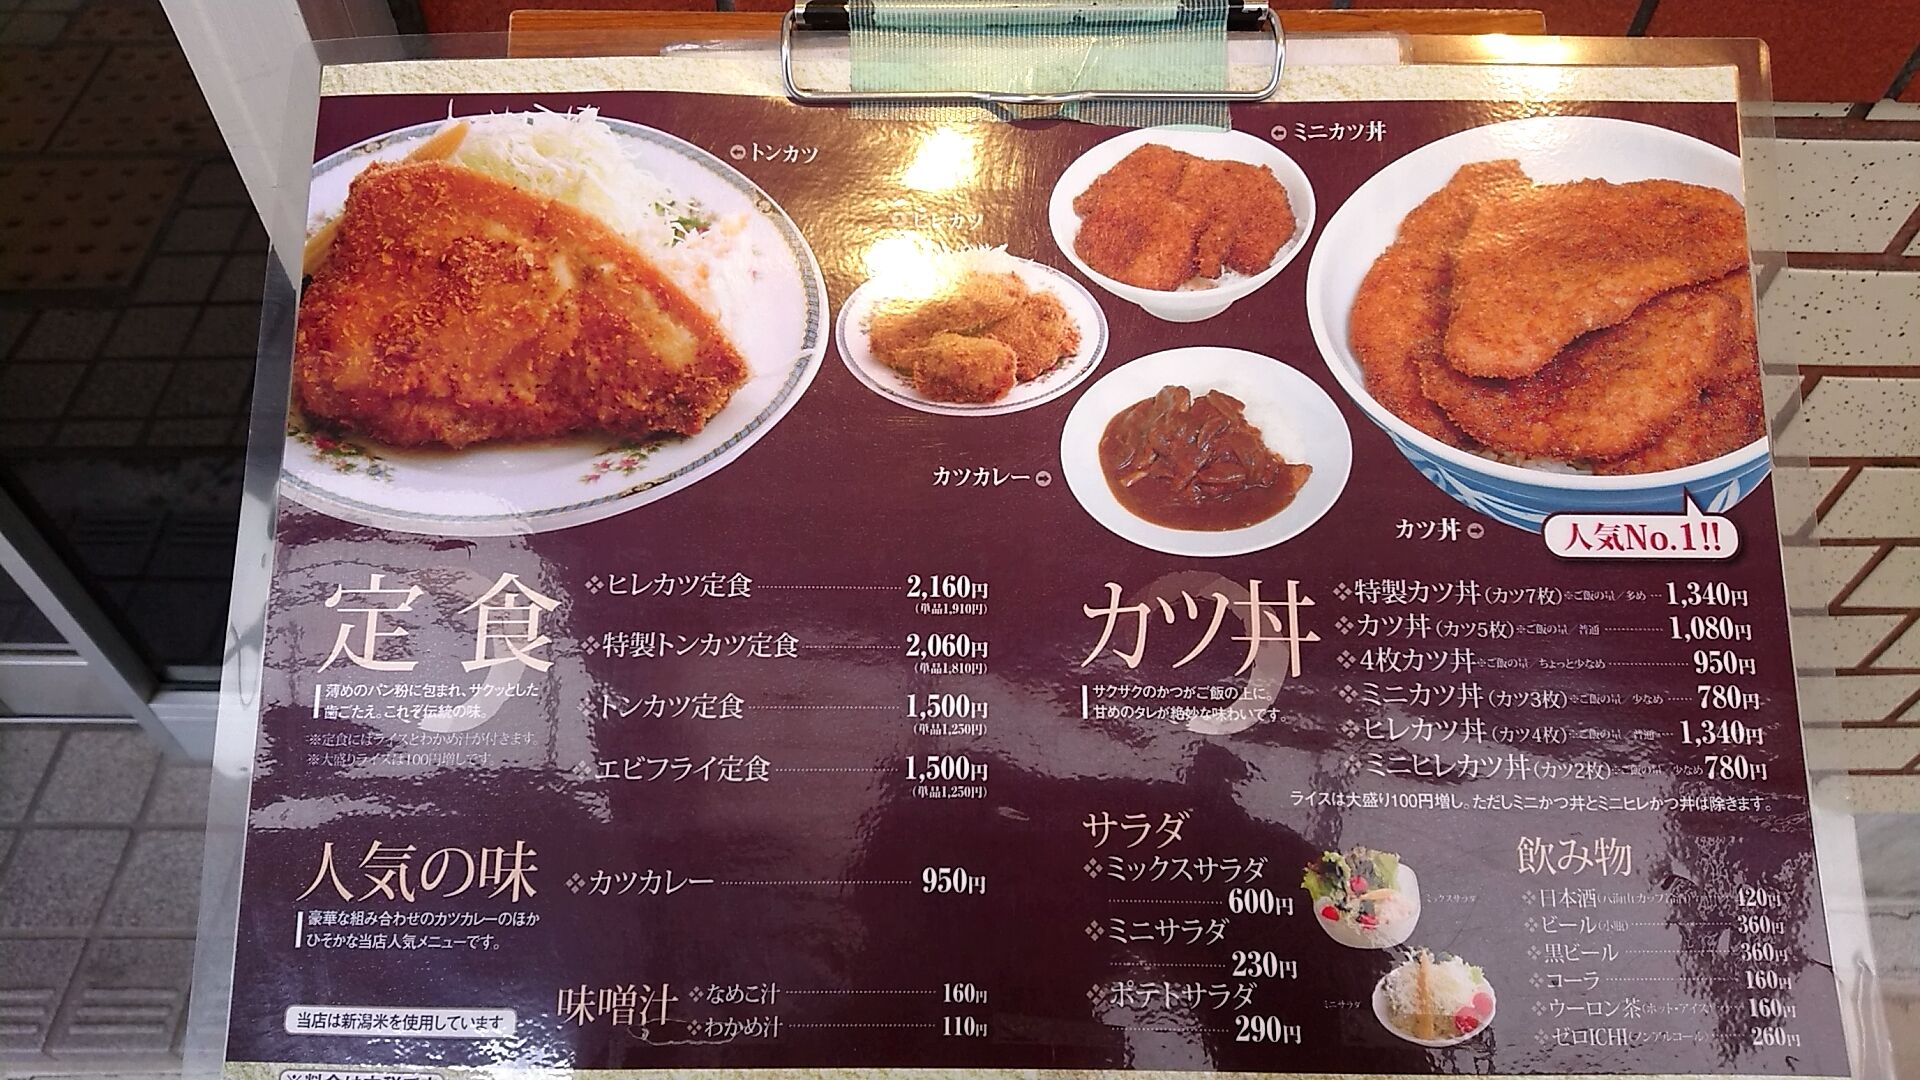 新潟タレかつ丼発祥のお店 とんかつ太郎で特製カツ丼 新潟がっとうんめもん探訪